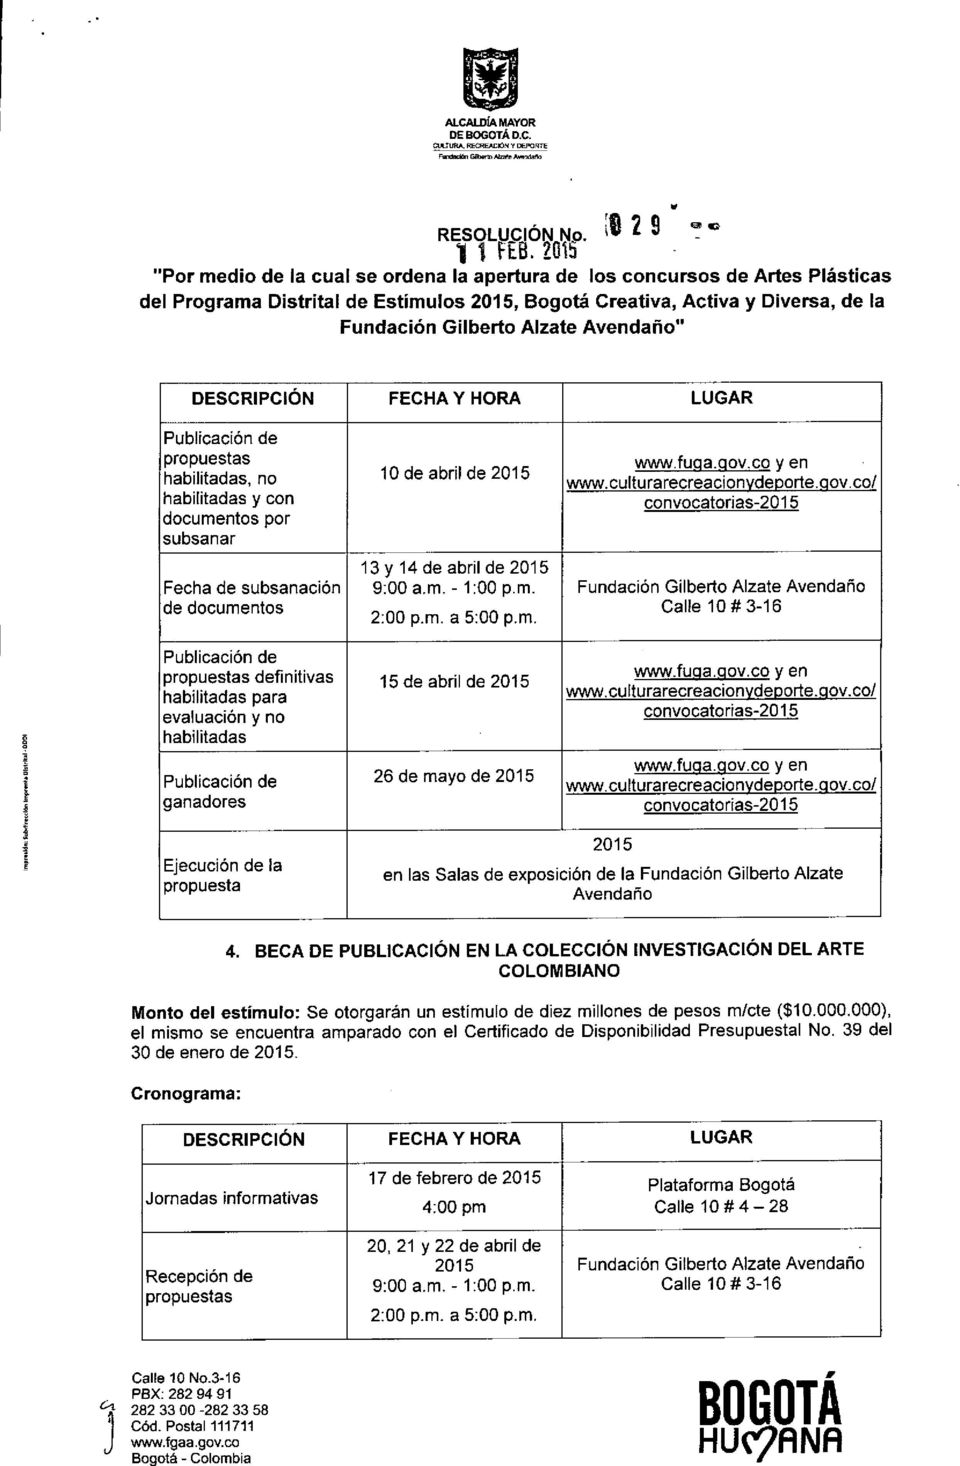 Fundación Gilberto Alzate Avendaño de documentos 2 i 1 definitivas 15 de abril de 2015 habilitadas para evaluación y no habilitadas 26 de mayo de 2015 ganadores www.fupa.gov.co yen www.